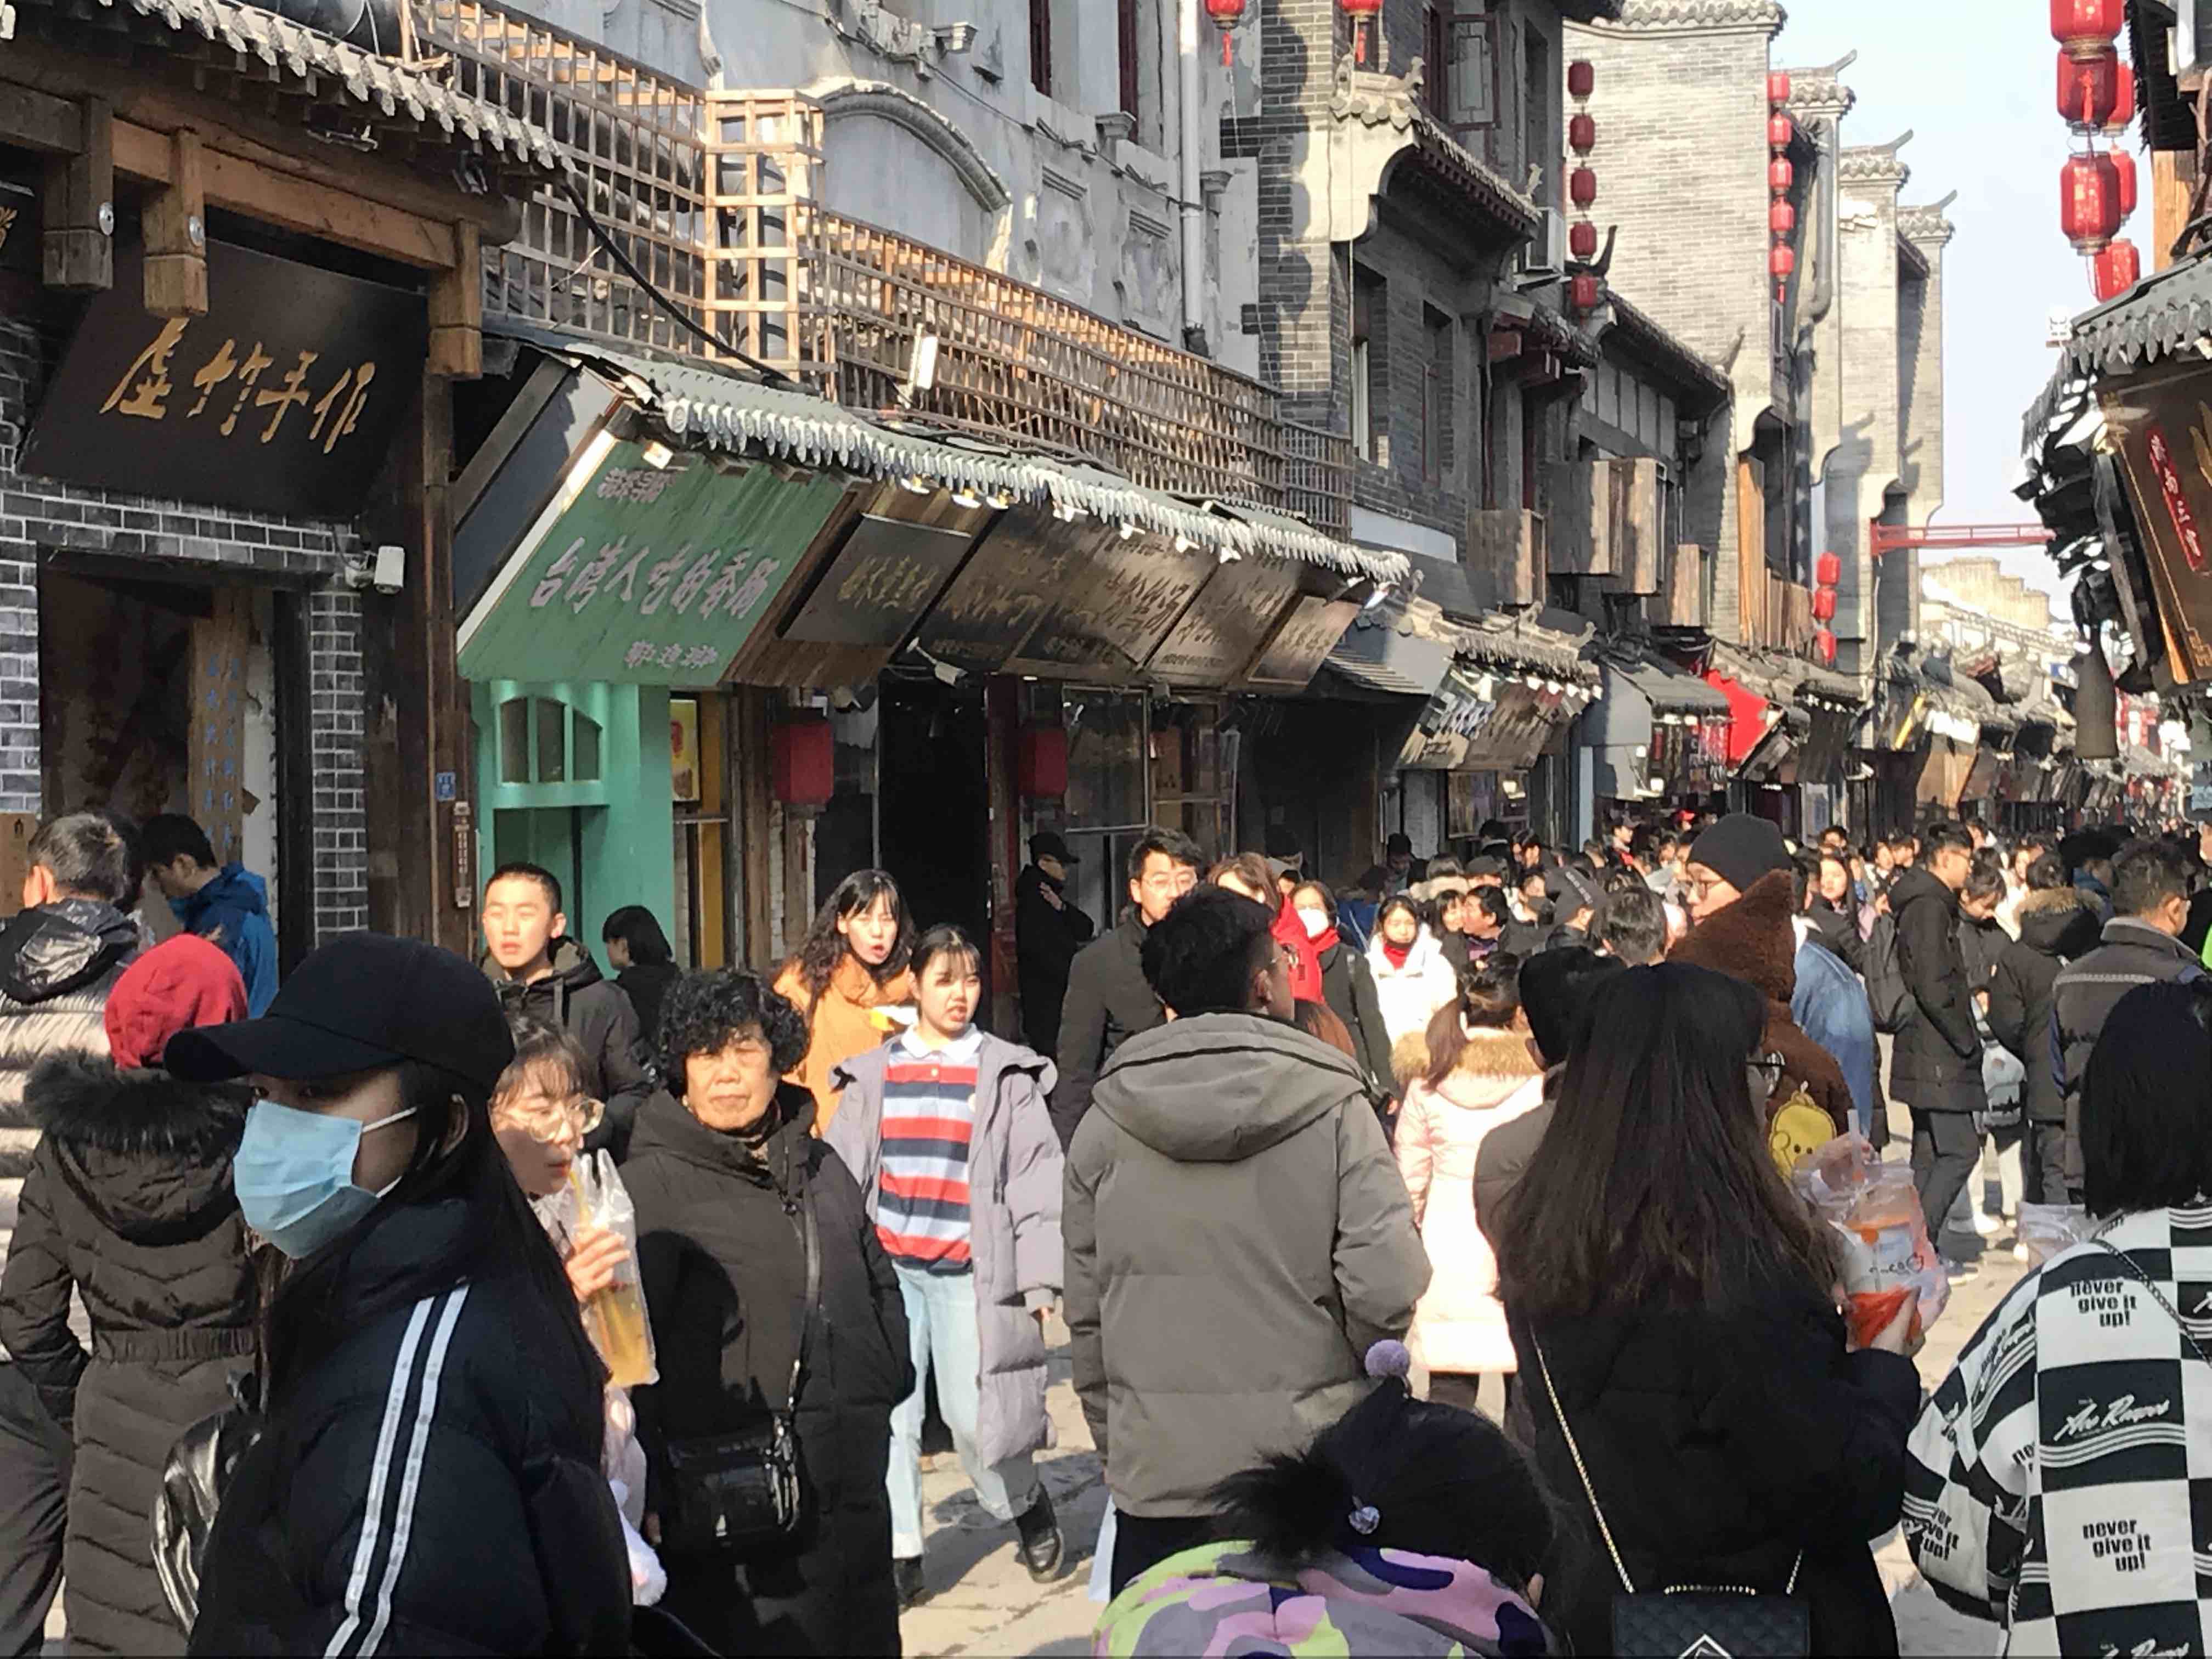 【携程攻略】济南芙蓉街景点,济南非常有特色的地方，汇集了济南的小吃，不过周末人太多，灰常的拥…